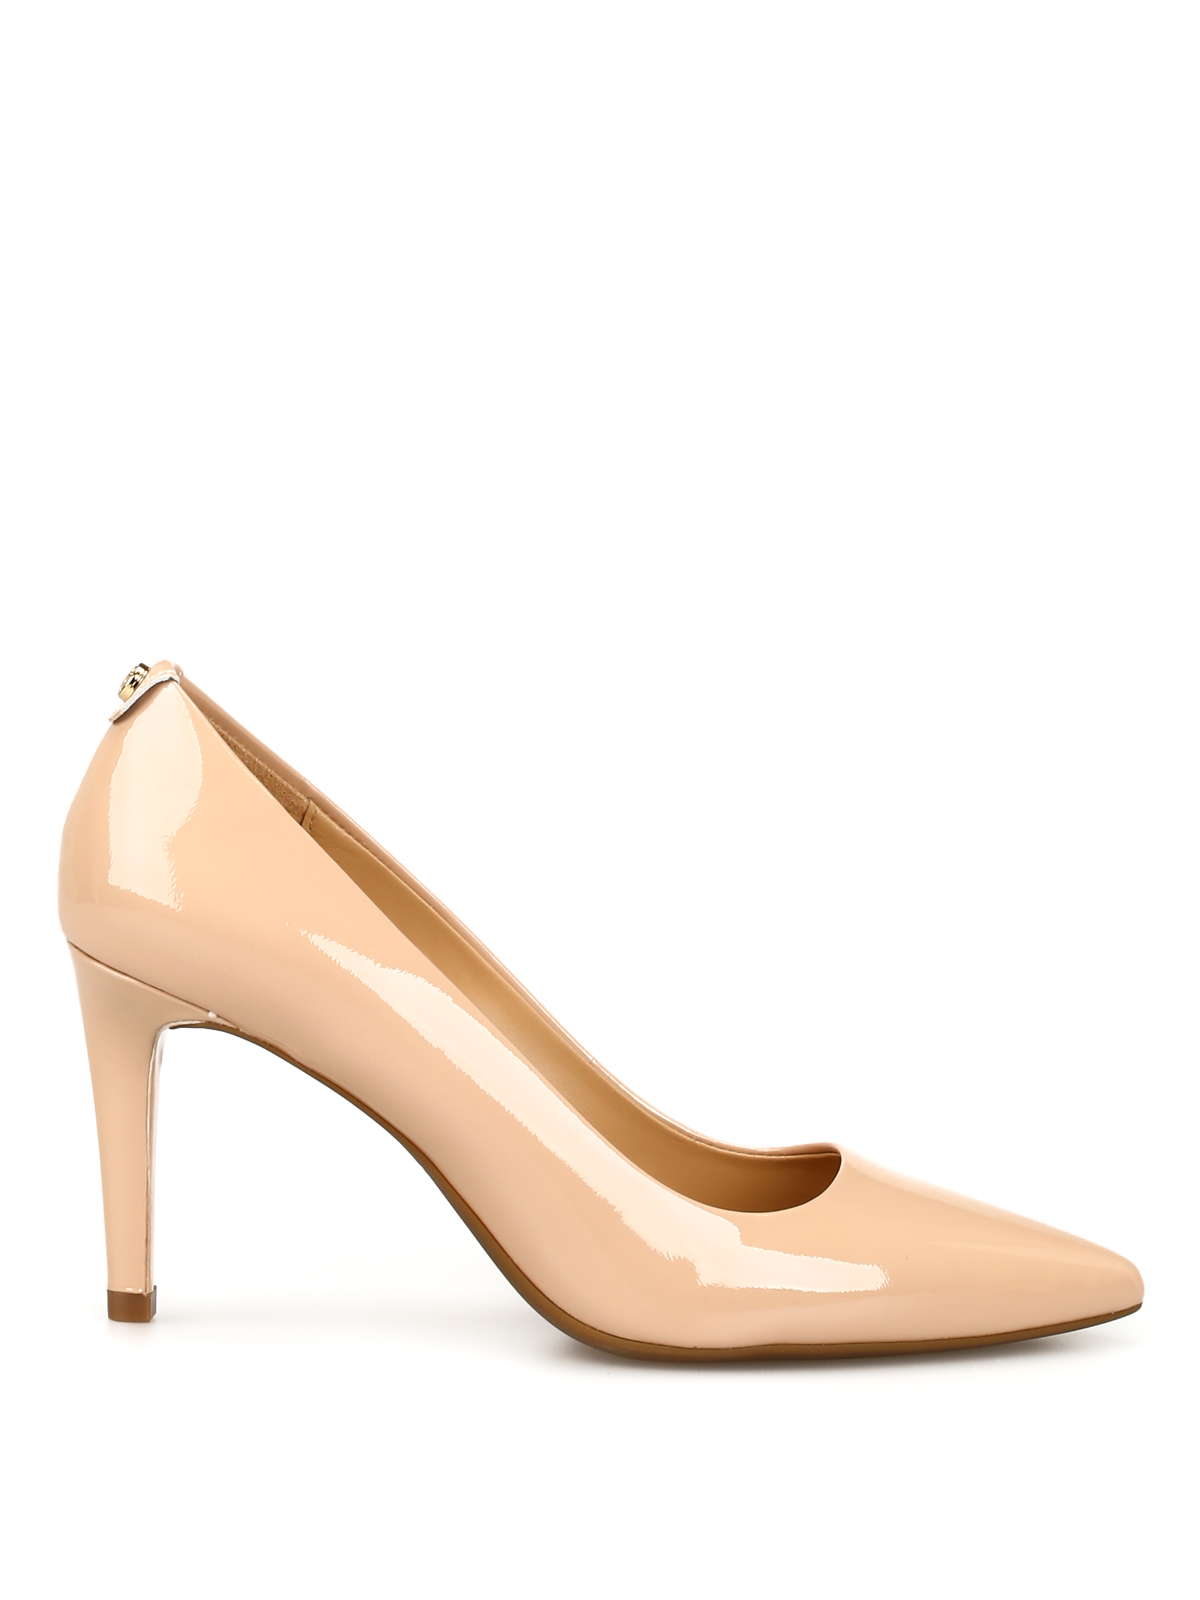 Court shoes Michael Kors - Dorothy blush patent leather pumps -  40F6DOMP1A660